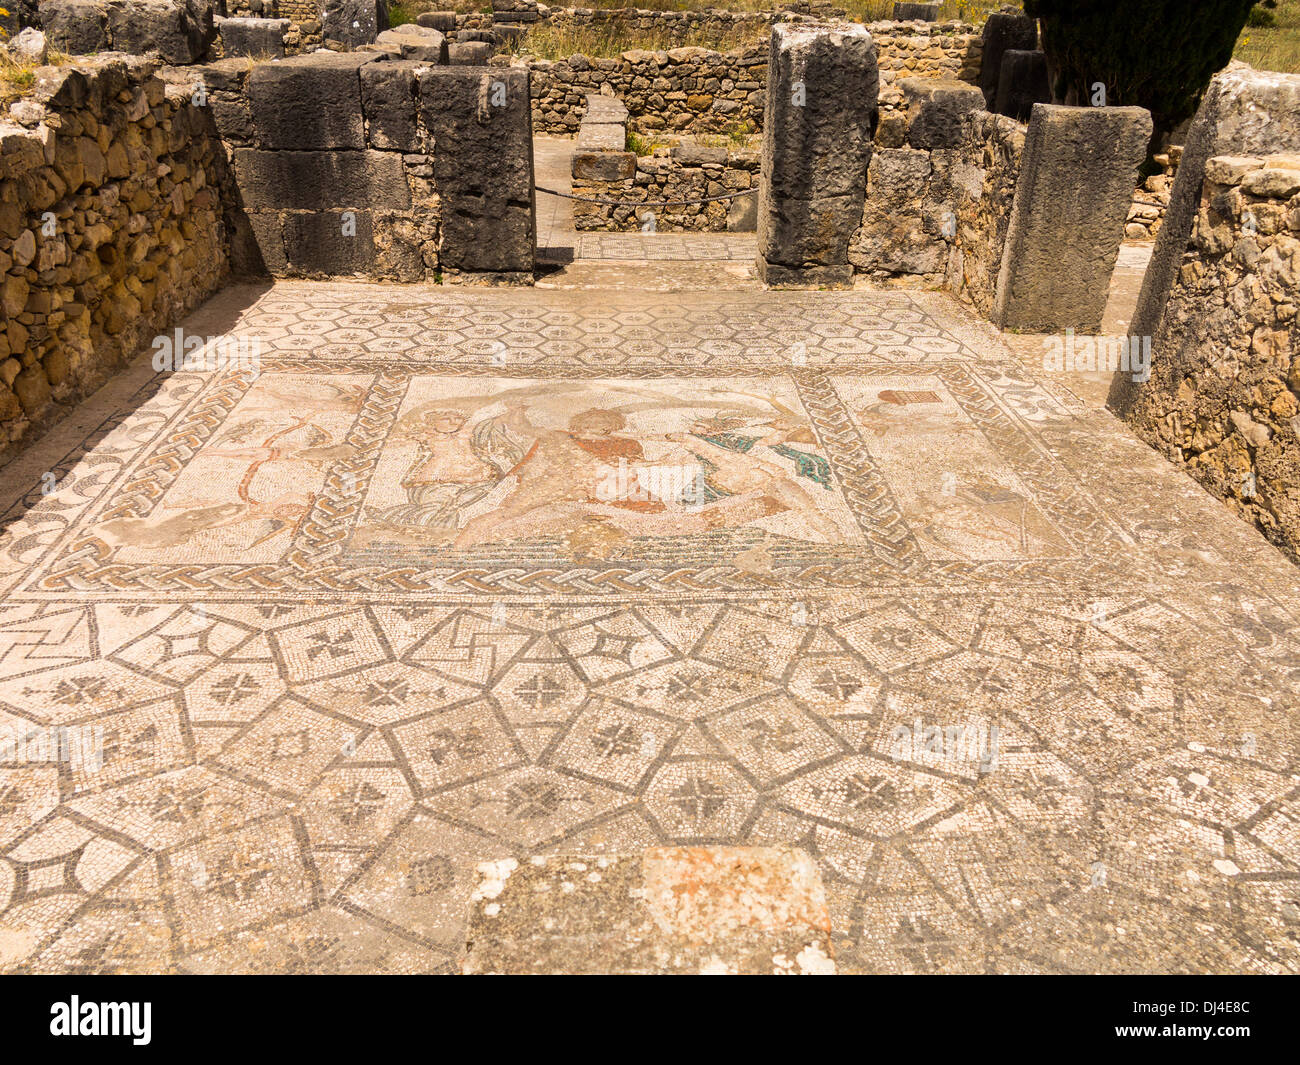 Ancienne cité romaine mosaïque montrant l'enlèvement d'HYLAS par les nymphes dans la vieille ville de Volubilis, Meknes, Maroc Banque D'Images